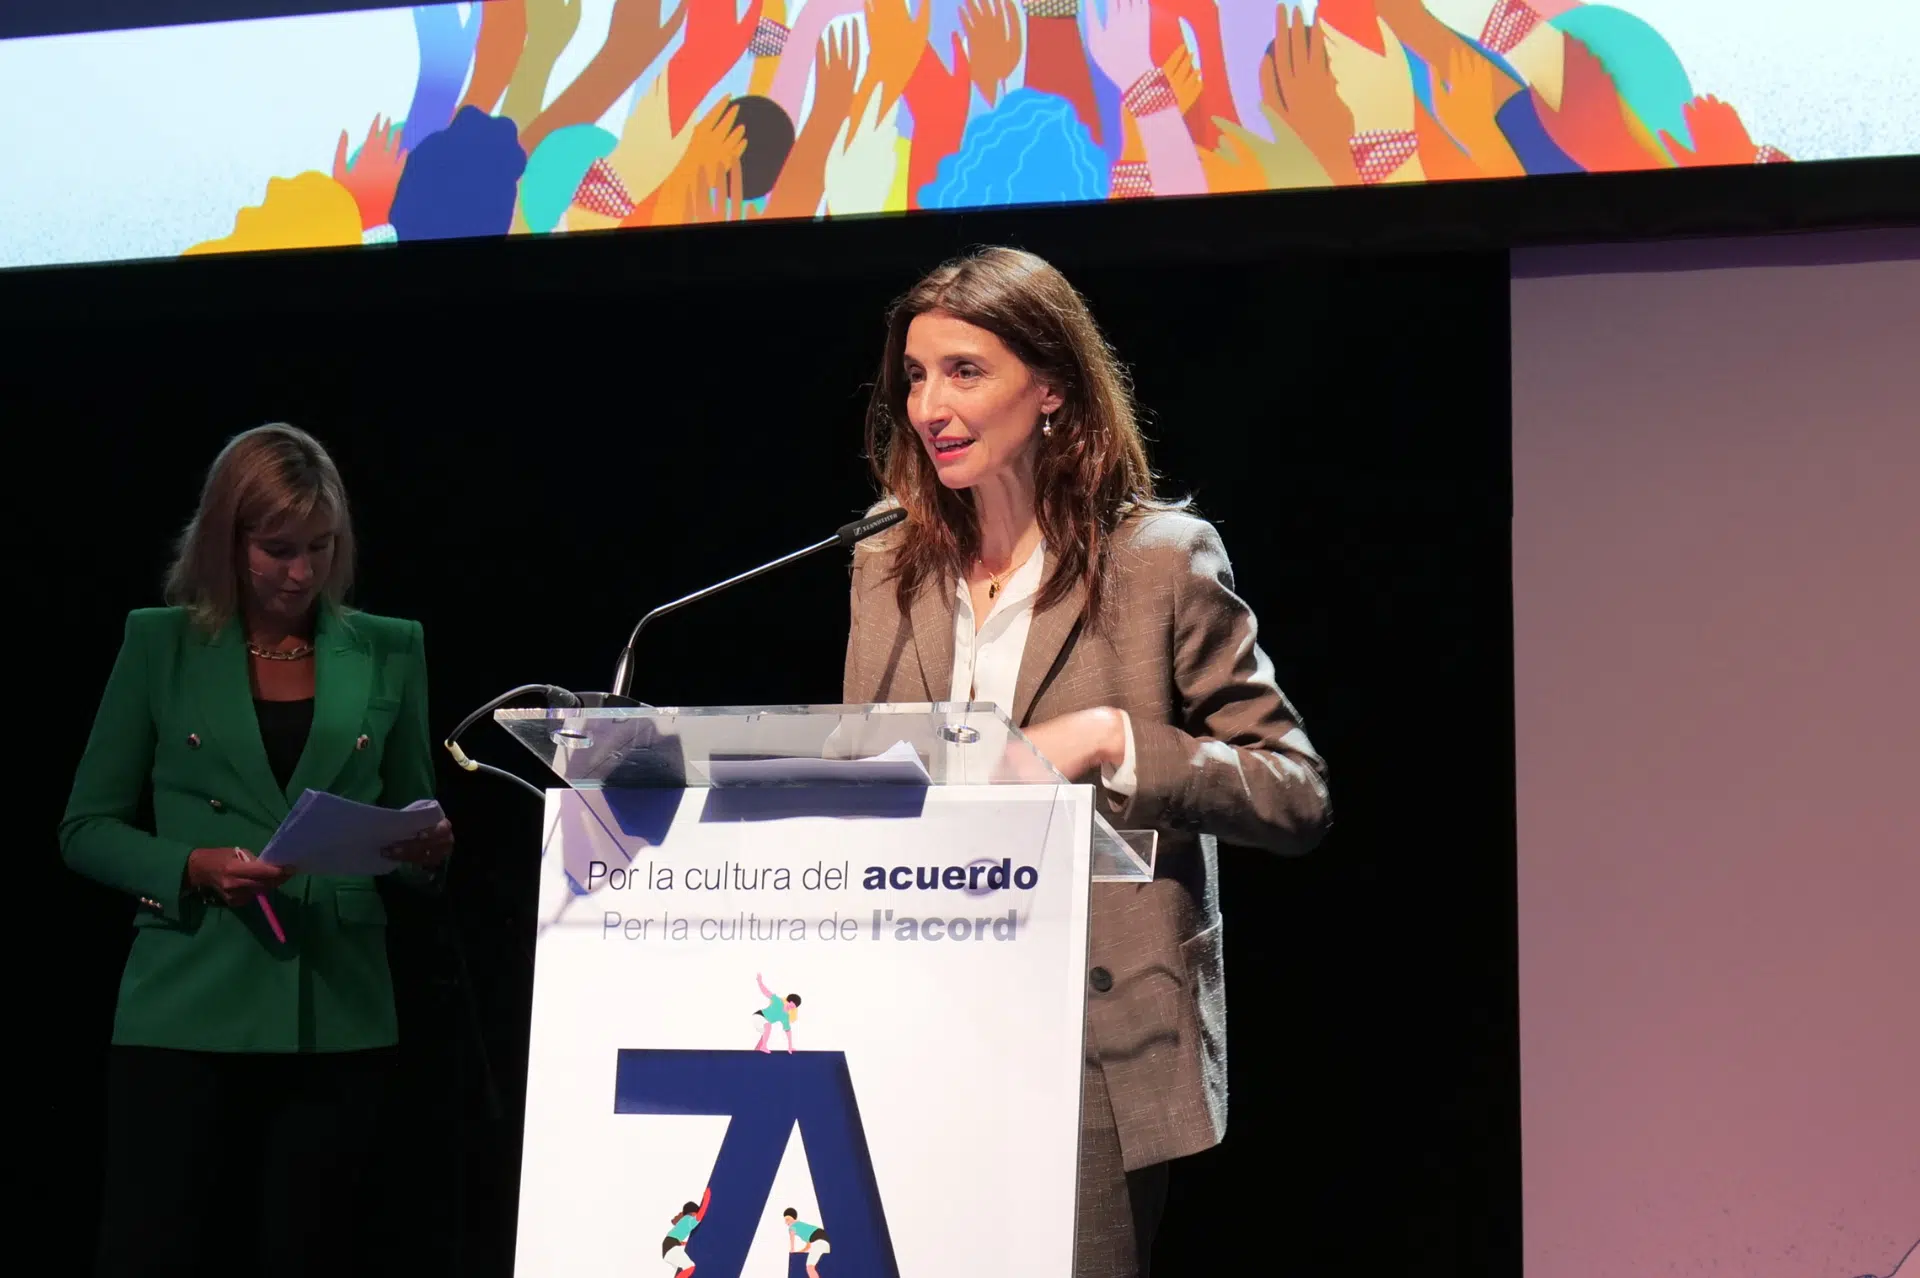 La ministra de Justicia inauguró el XIII Congreso de la Abogacía Española